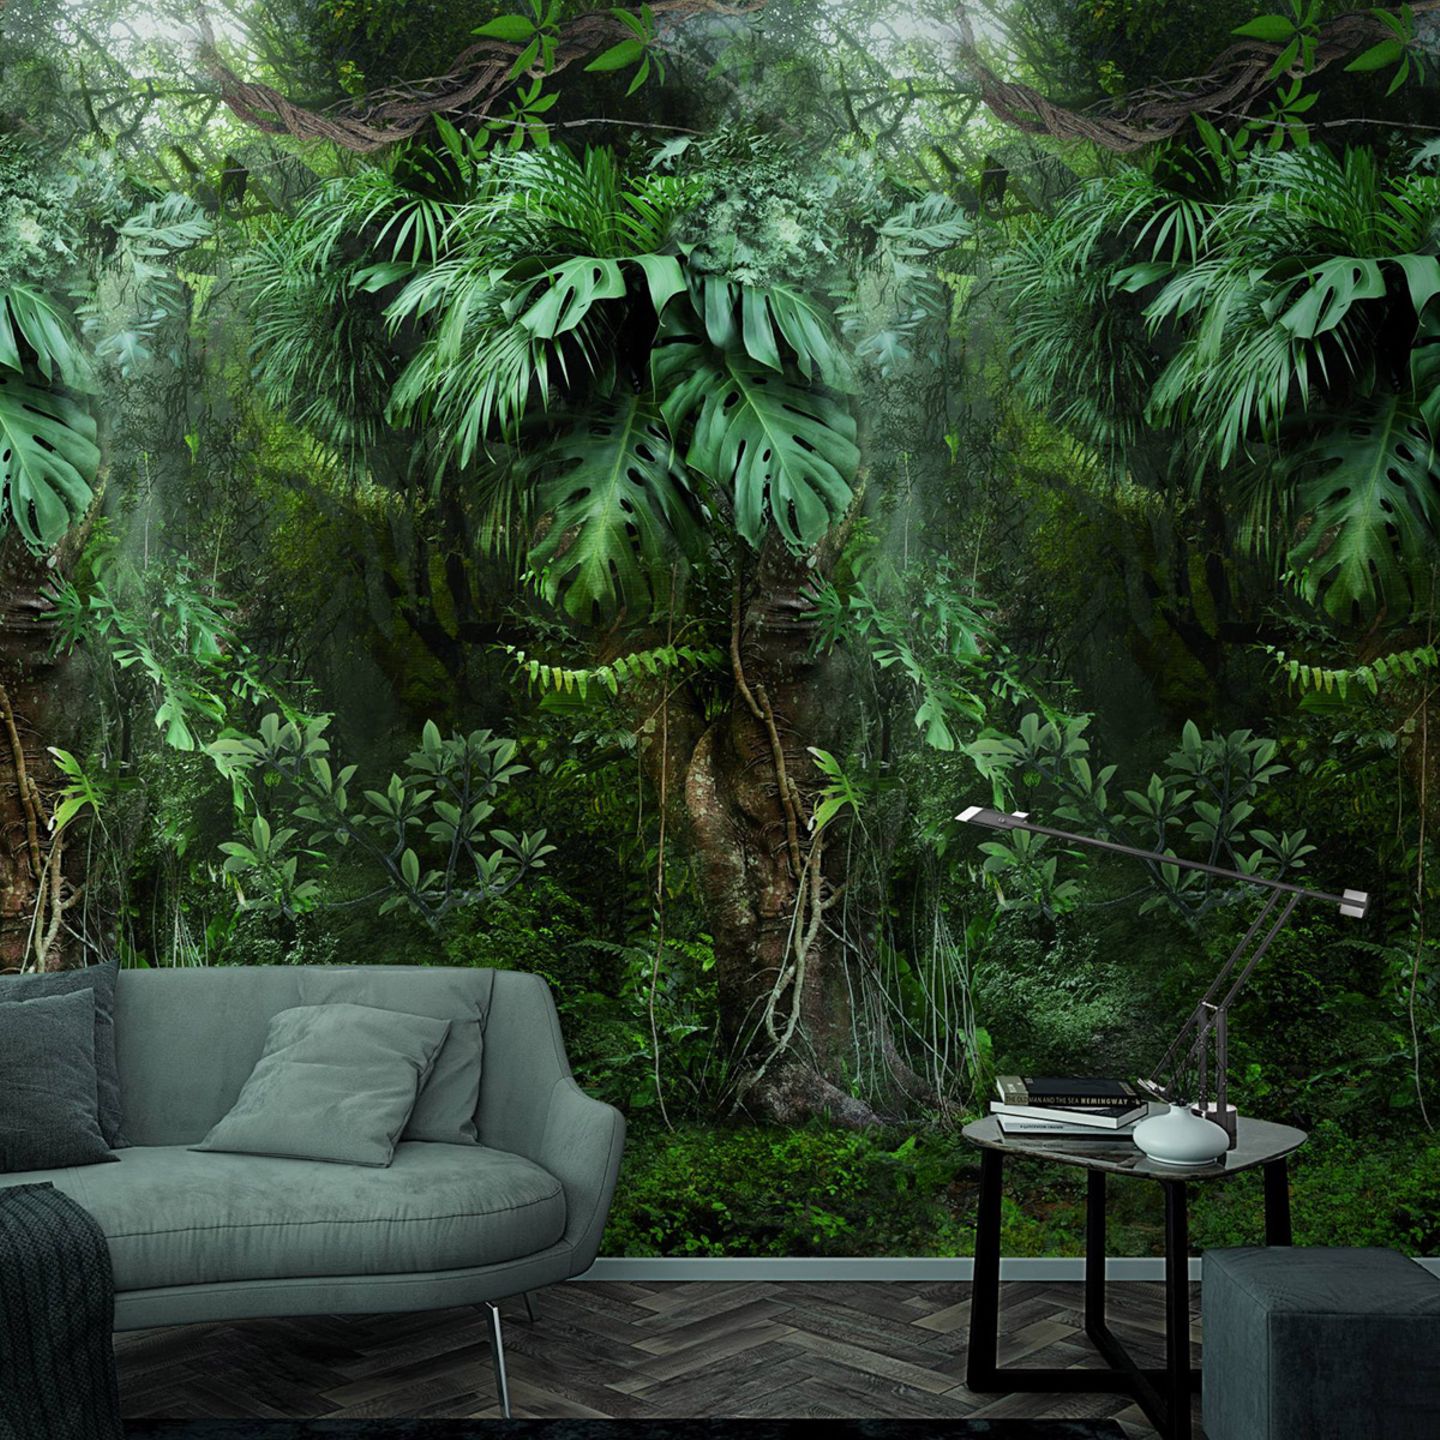 Tapete "Botanik" mit Dschungel-Feeling vor einem grünen Sofa und einem dunklen, kleinen Beistelltisch